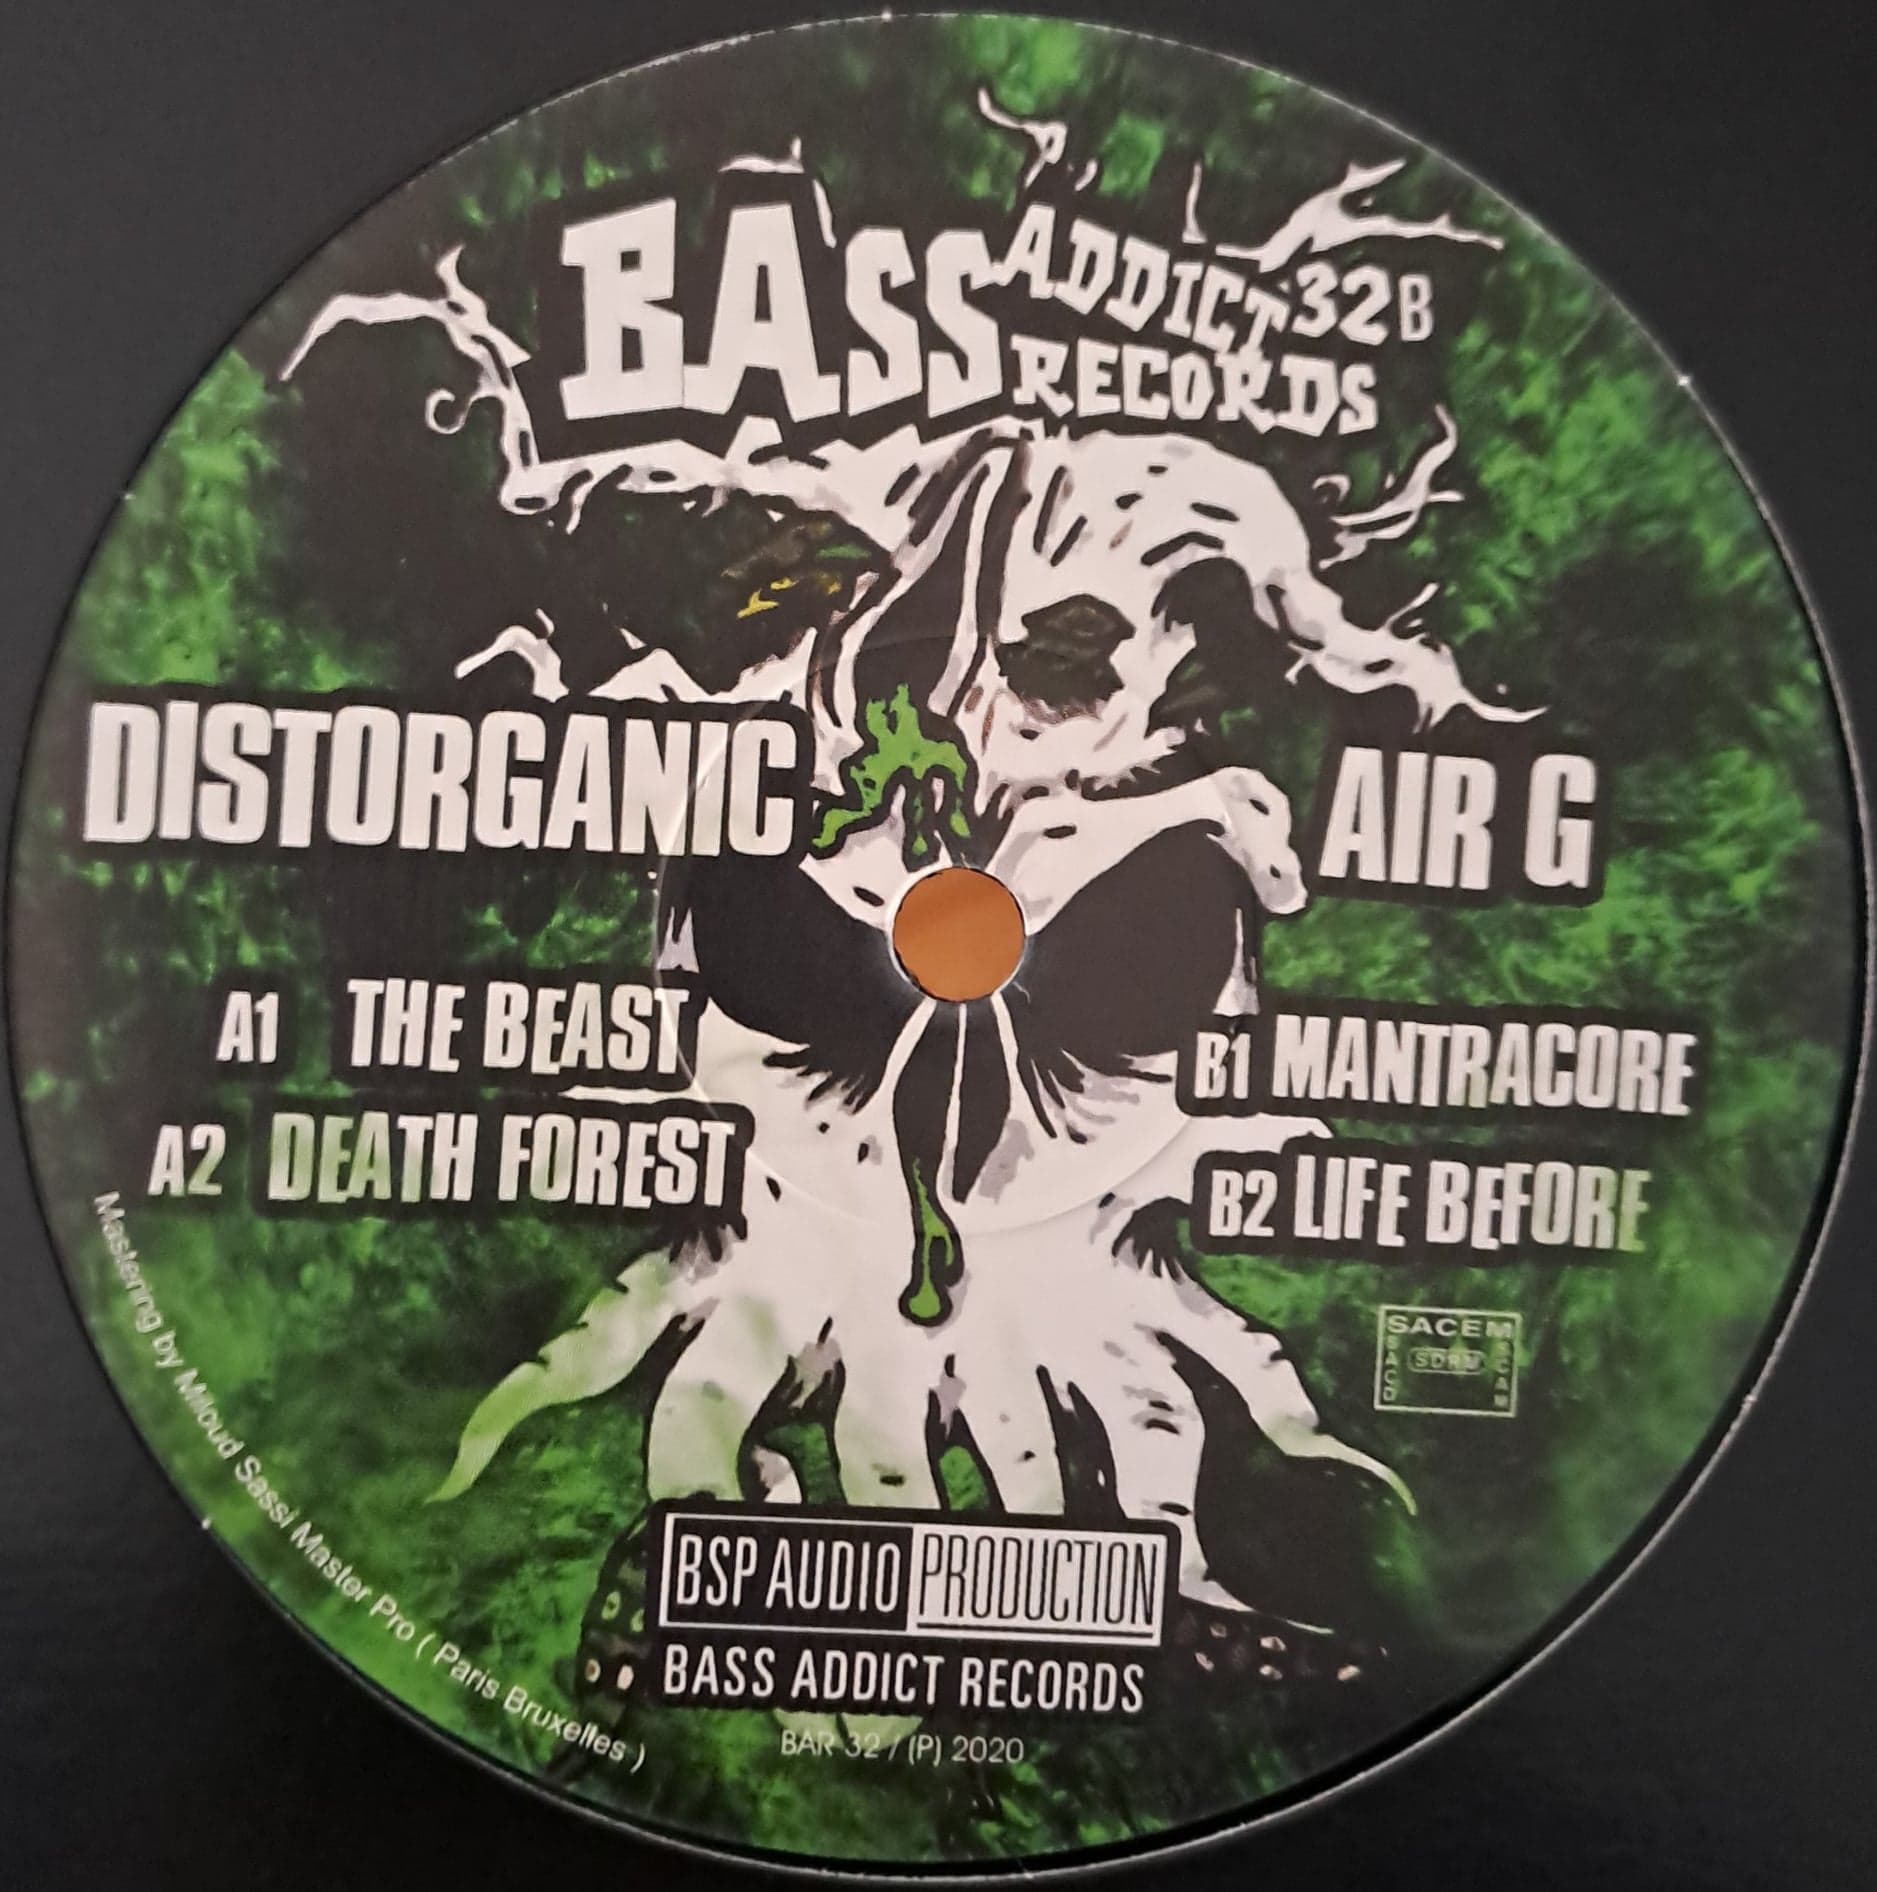 Bass Addict 32 (toute dernière copie en stock) - vinyle acid